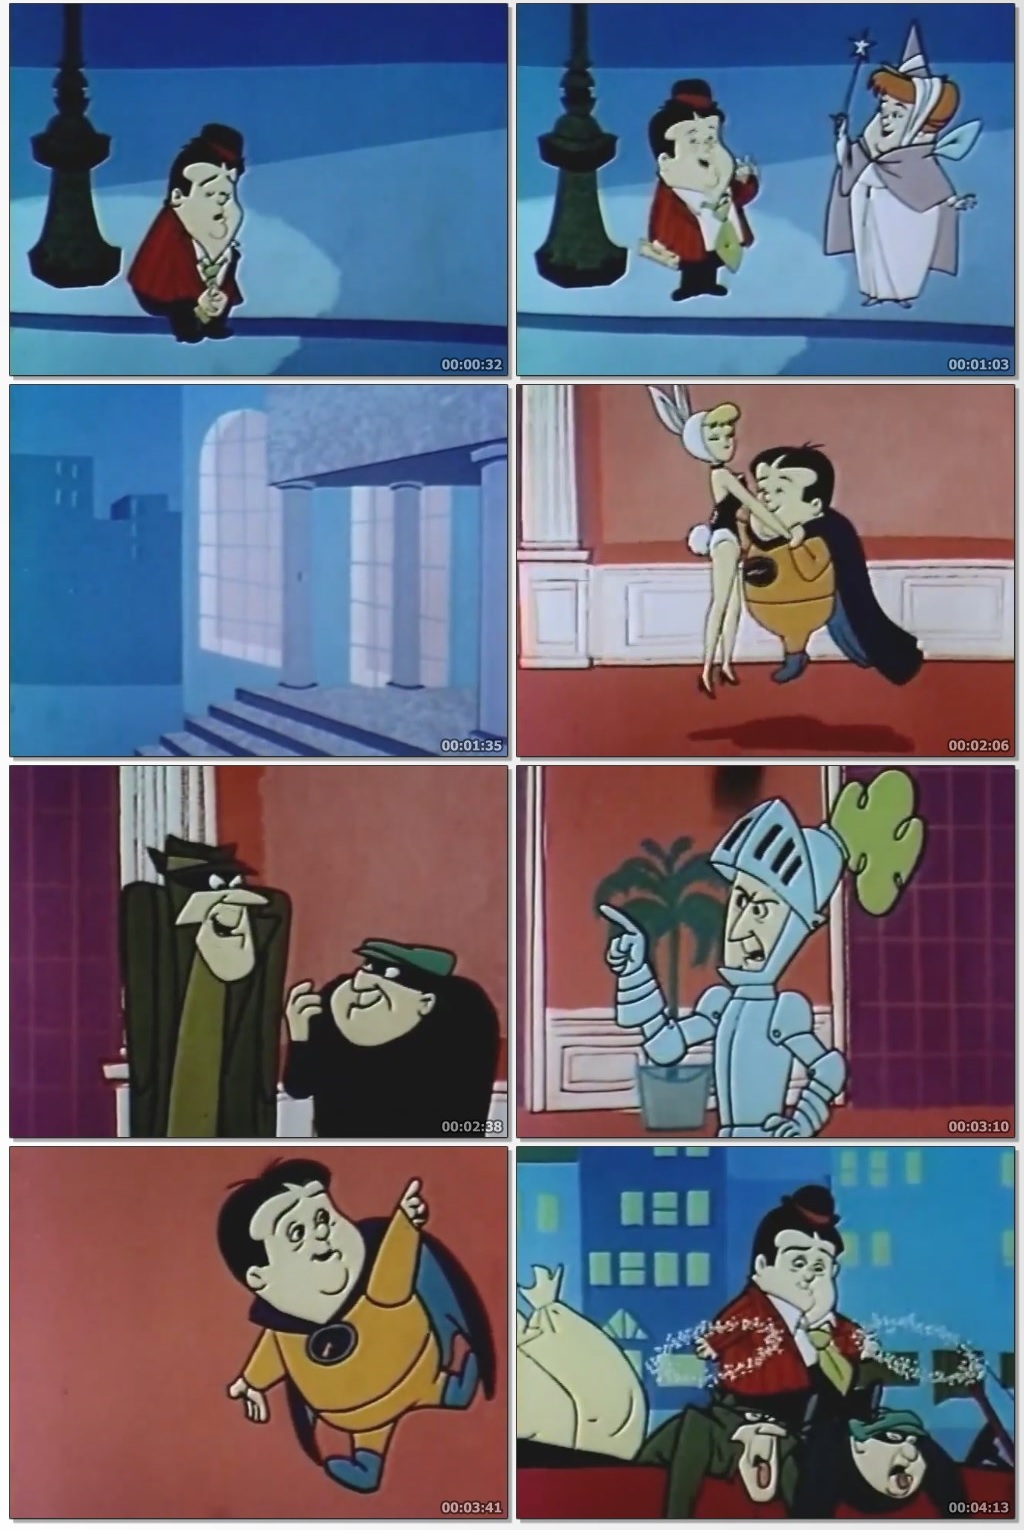 descargar abbott y costello animado 1967 hanna barbera serie completa todos los episodios